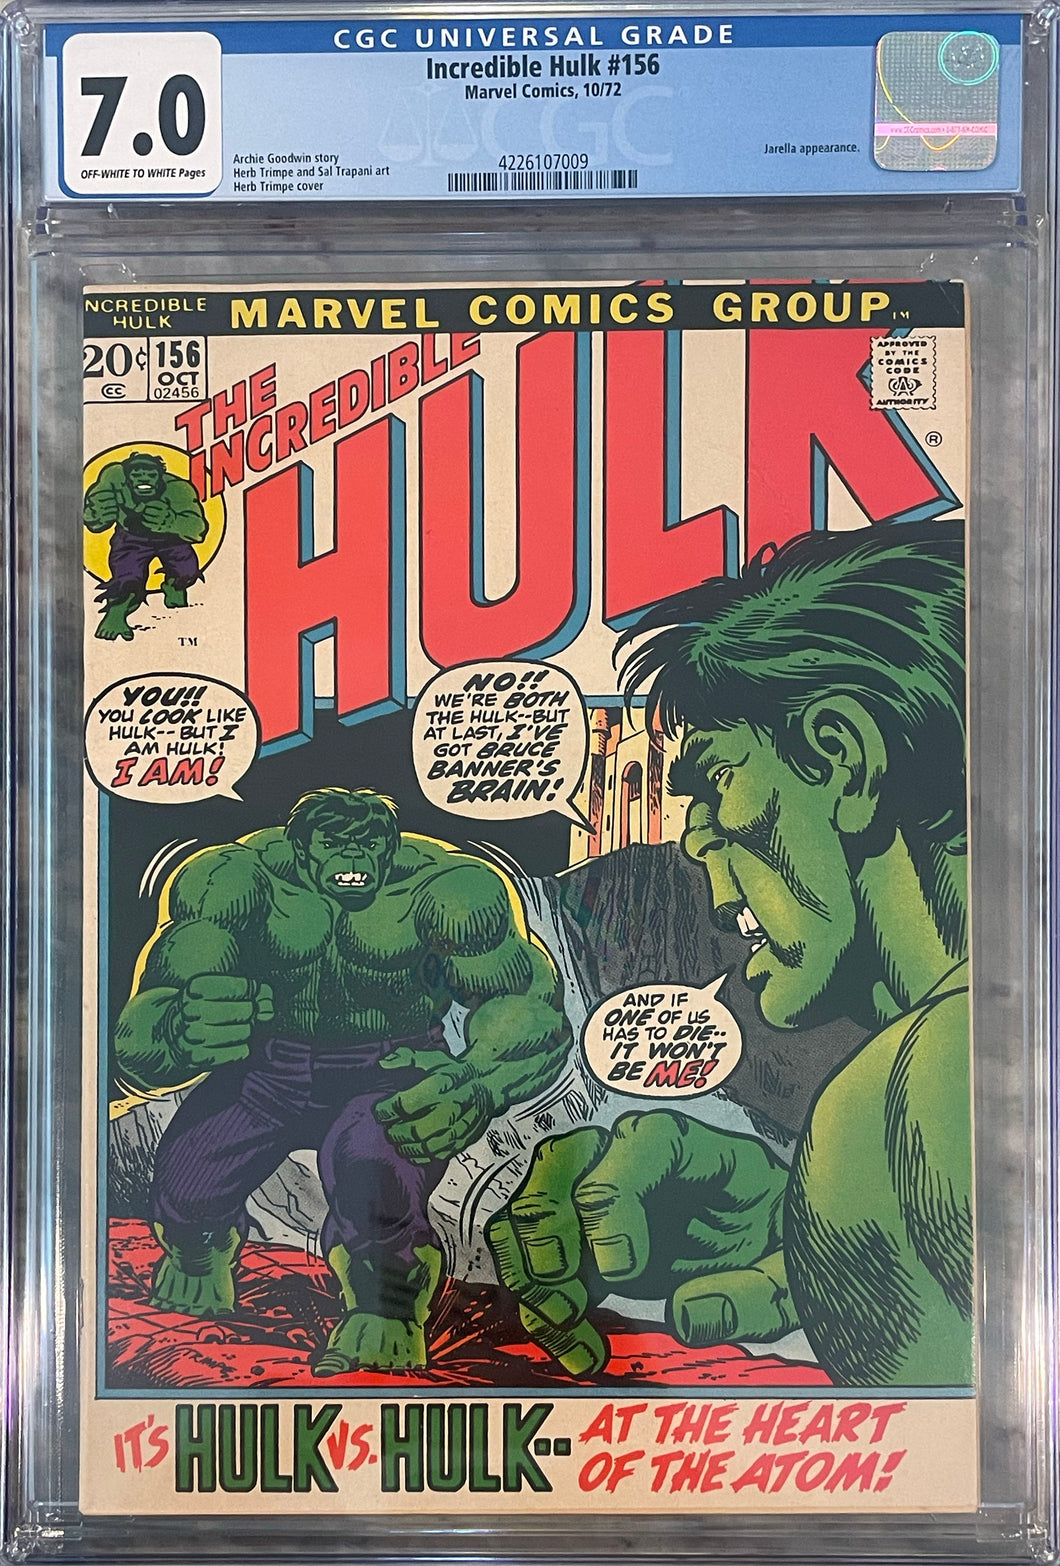 Incredible Hulk #156 CGC 7.0